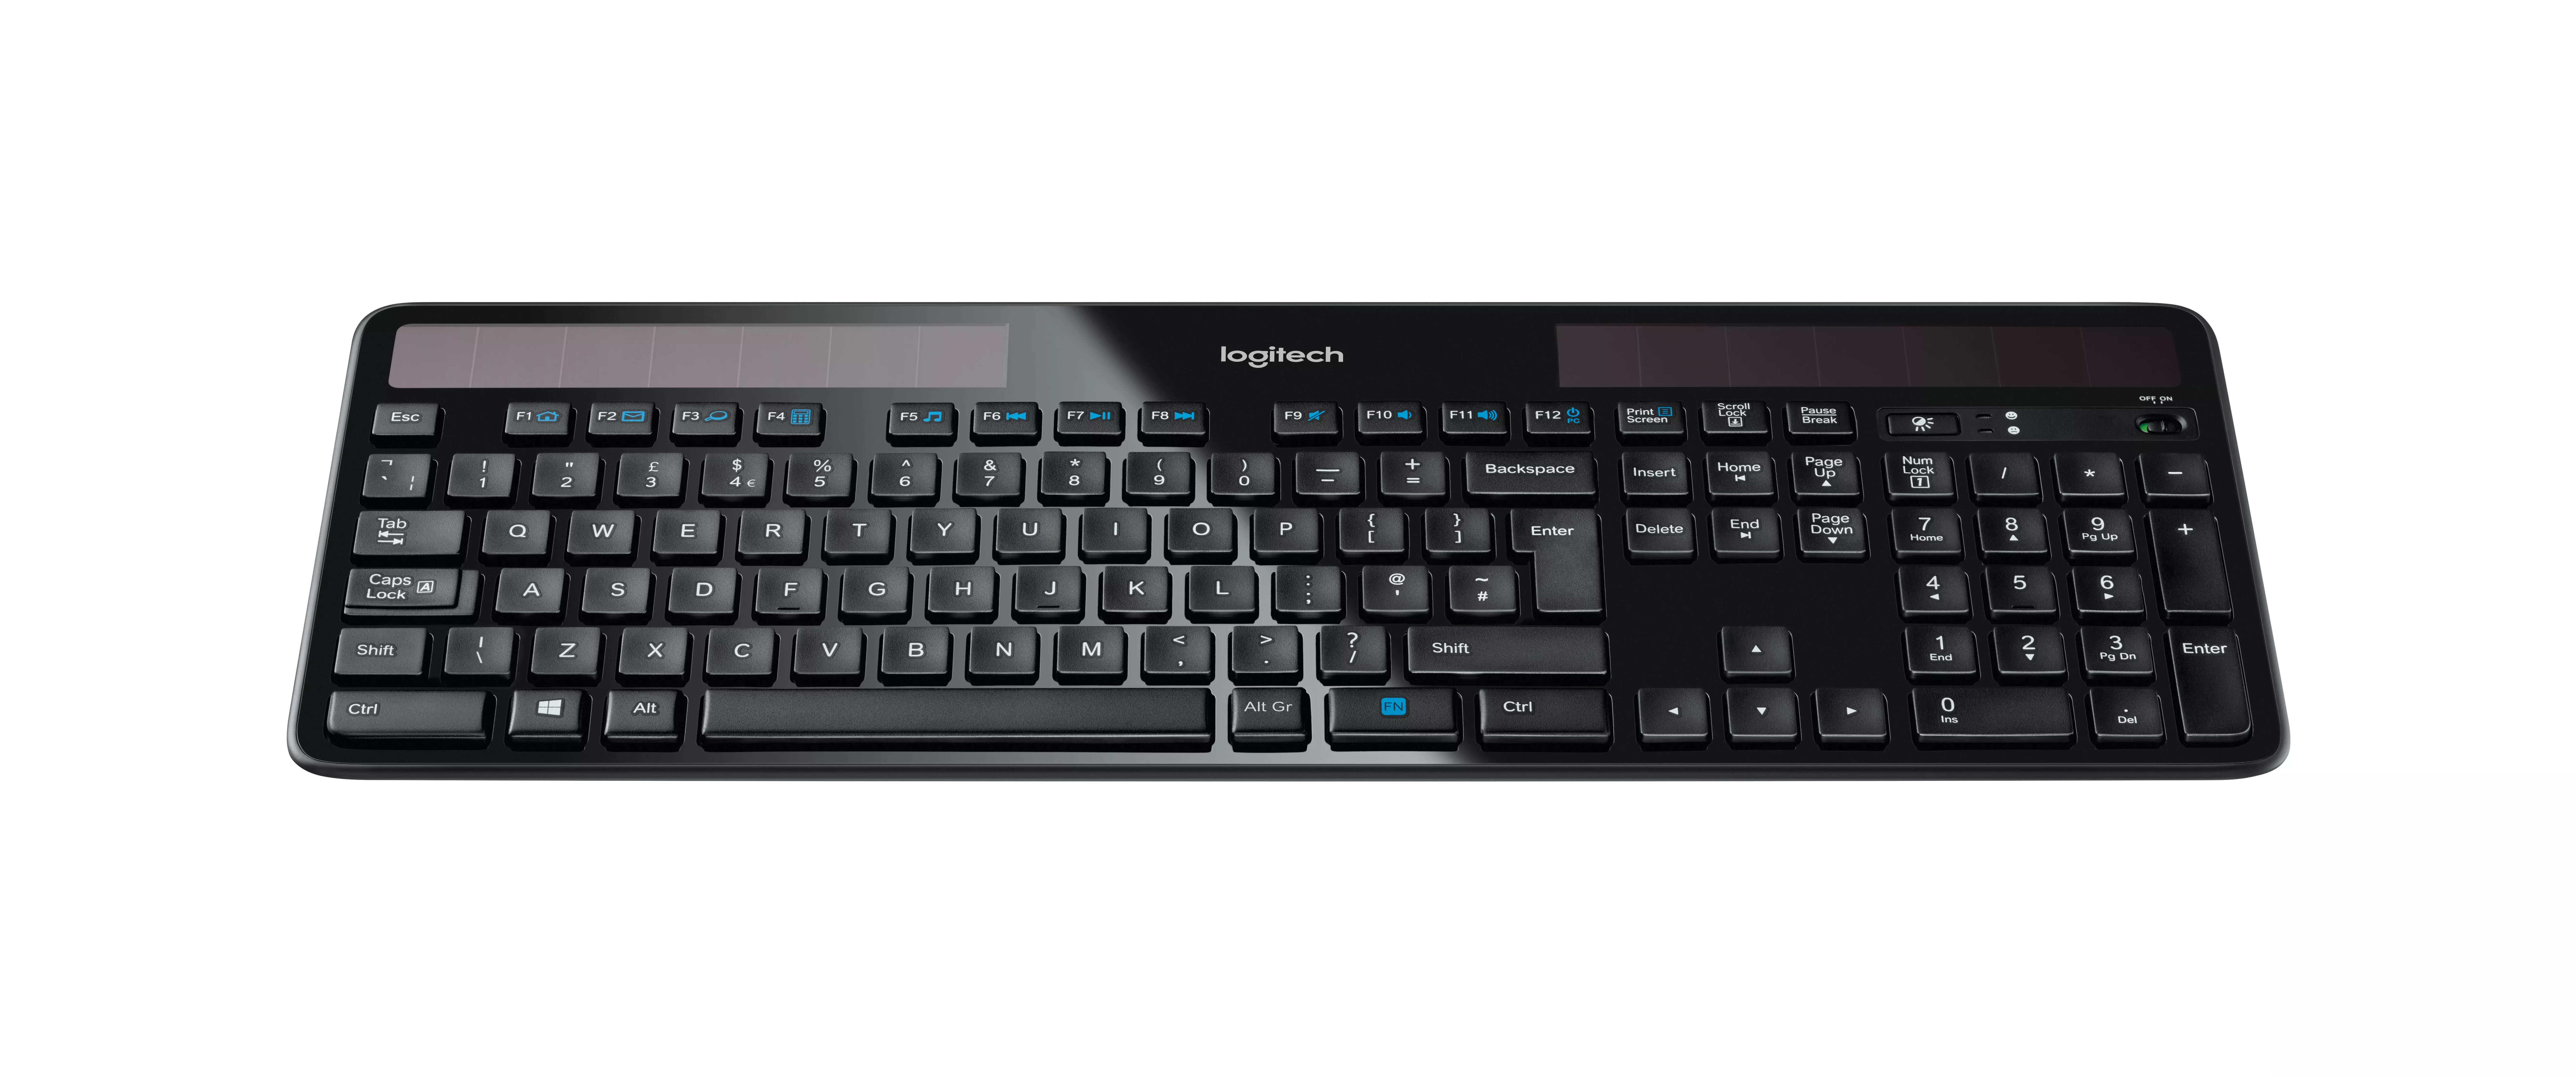 Vente Logitech Wireless Solar Keyboard K750 Logitech au meilleur prix - visuel 2